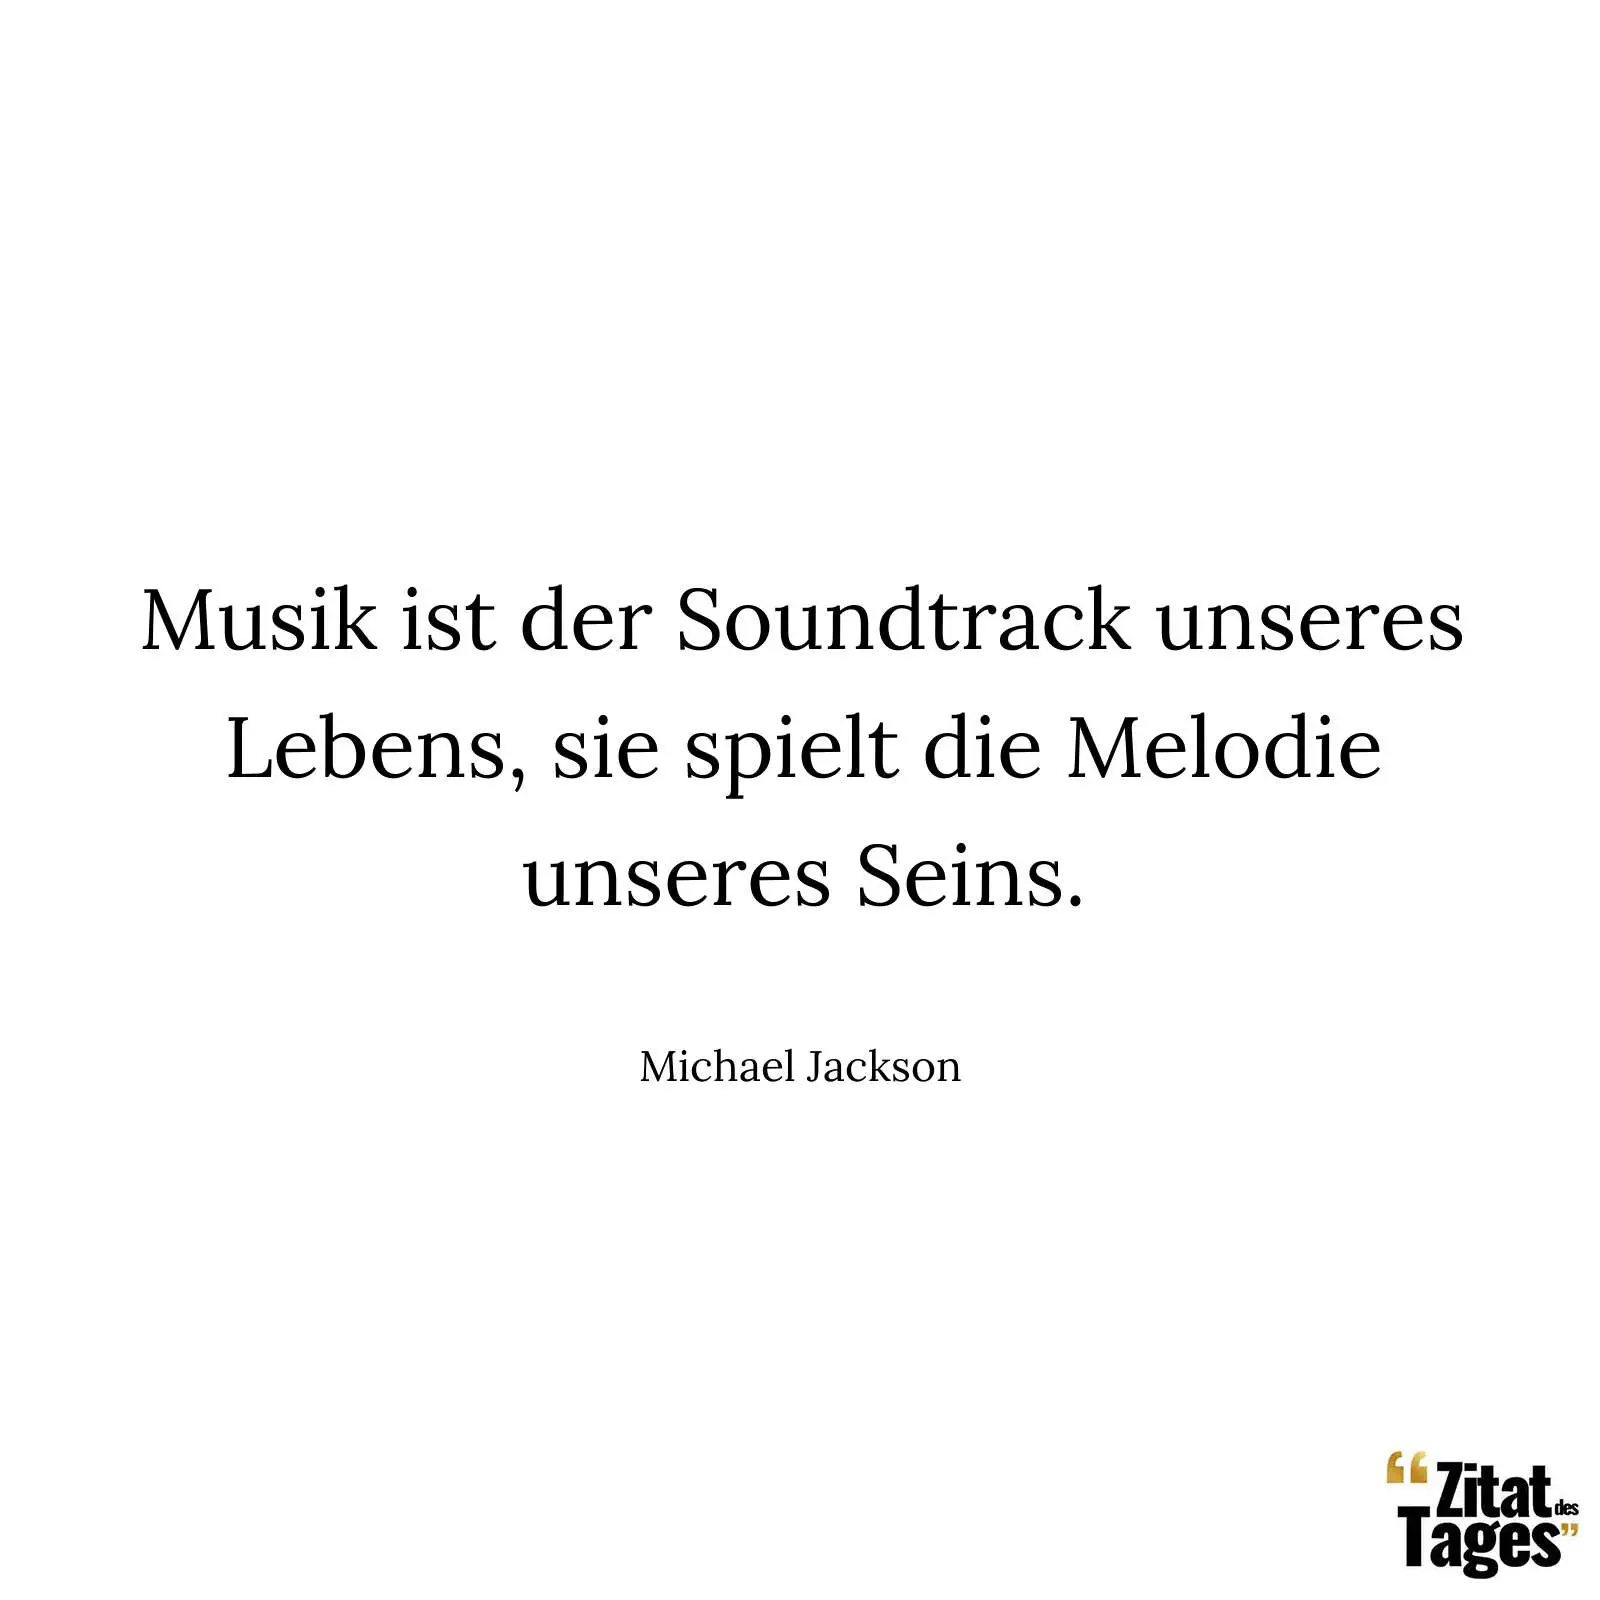 Musik ist der Soundtrack unseres Lebens, sie spielt die Melodie unseres Seins. - Michael Jackson